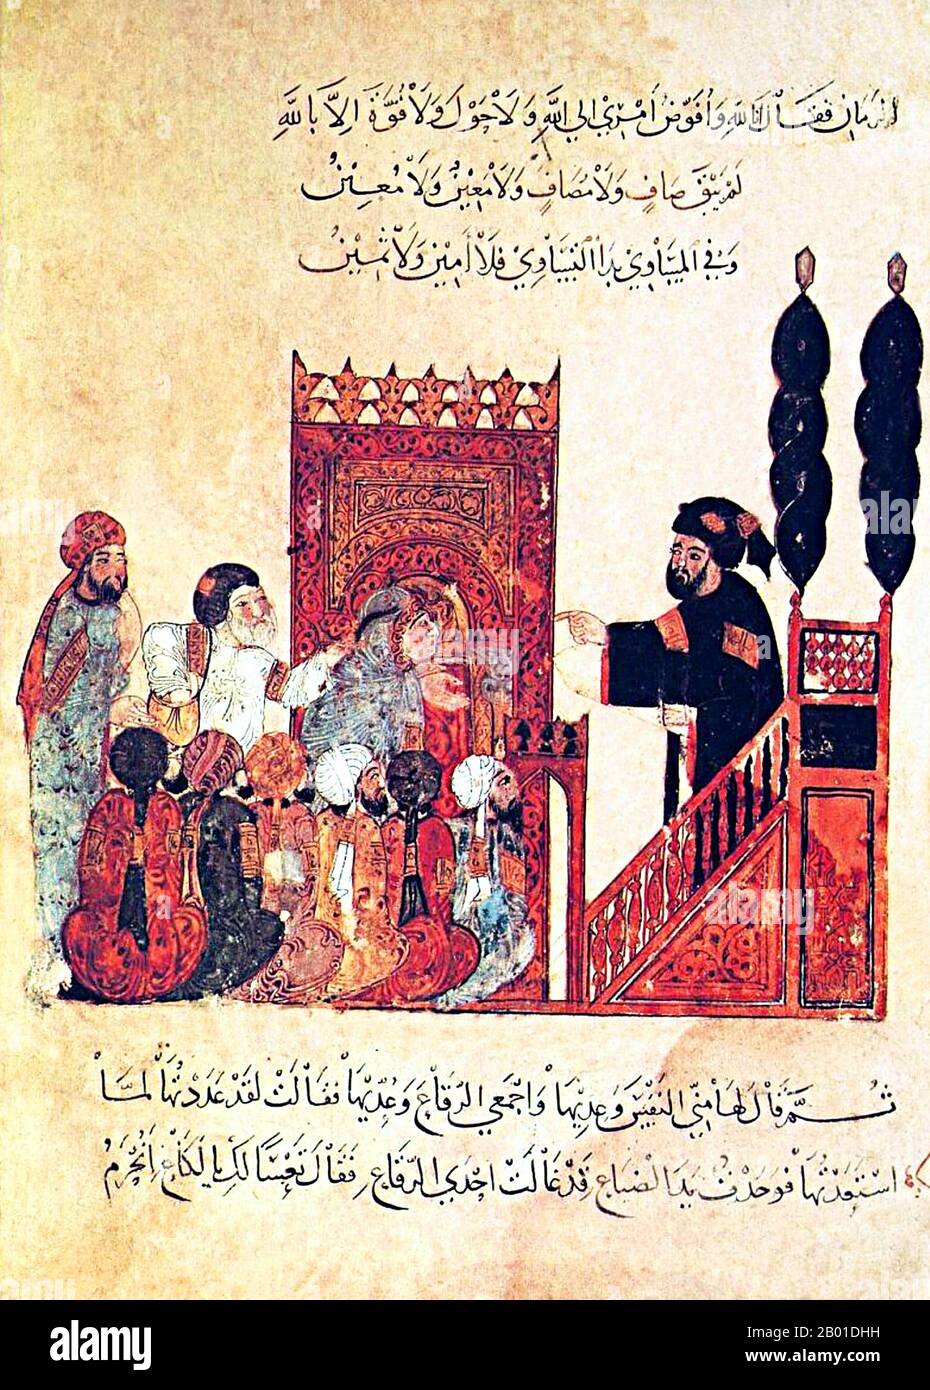 Iraq/Arabia: L'imam di una moschea che si rivolge ai credenti riuniti dal minibar o dal pulpito. Miniatura di Yahya ibn Mahmud al-Wasiti (13th ° secolo), 1237 CE. Yahyâ ibn Mahmûd al-Wâsitî è stato un artista arabo islamico del 13th° secolo. Al-Wasiti è nato a Wasit, nel sud dell'Iraq. Fu notato per le sue illustrazioni del Maqam di al-Hariri. Maqāma (letteralmente 'assemblee') sono un genere letterario arabo (originariamente) di prosa rima con intervalli di poesia in cui lo stravagamento retorico è cospicuo. Si dice che l'autore del 10th° secolo Badī' al-Zaman al-Hamadhāni abbia inventato la forma. Foto Stock